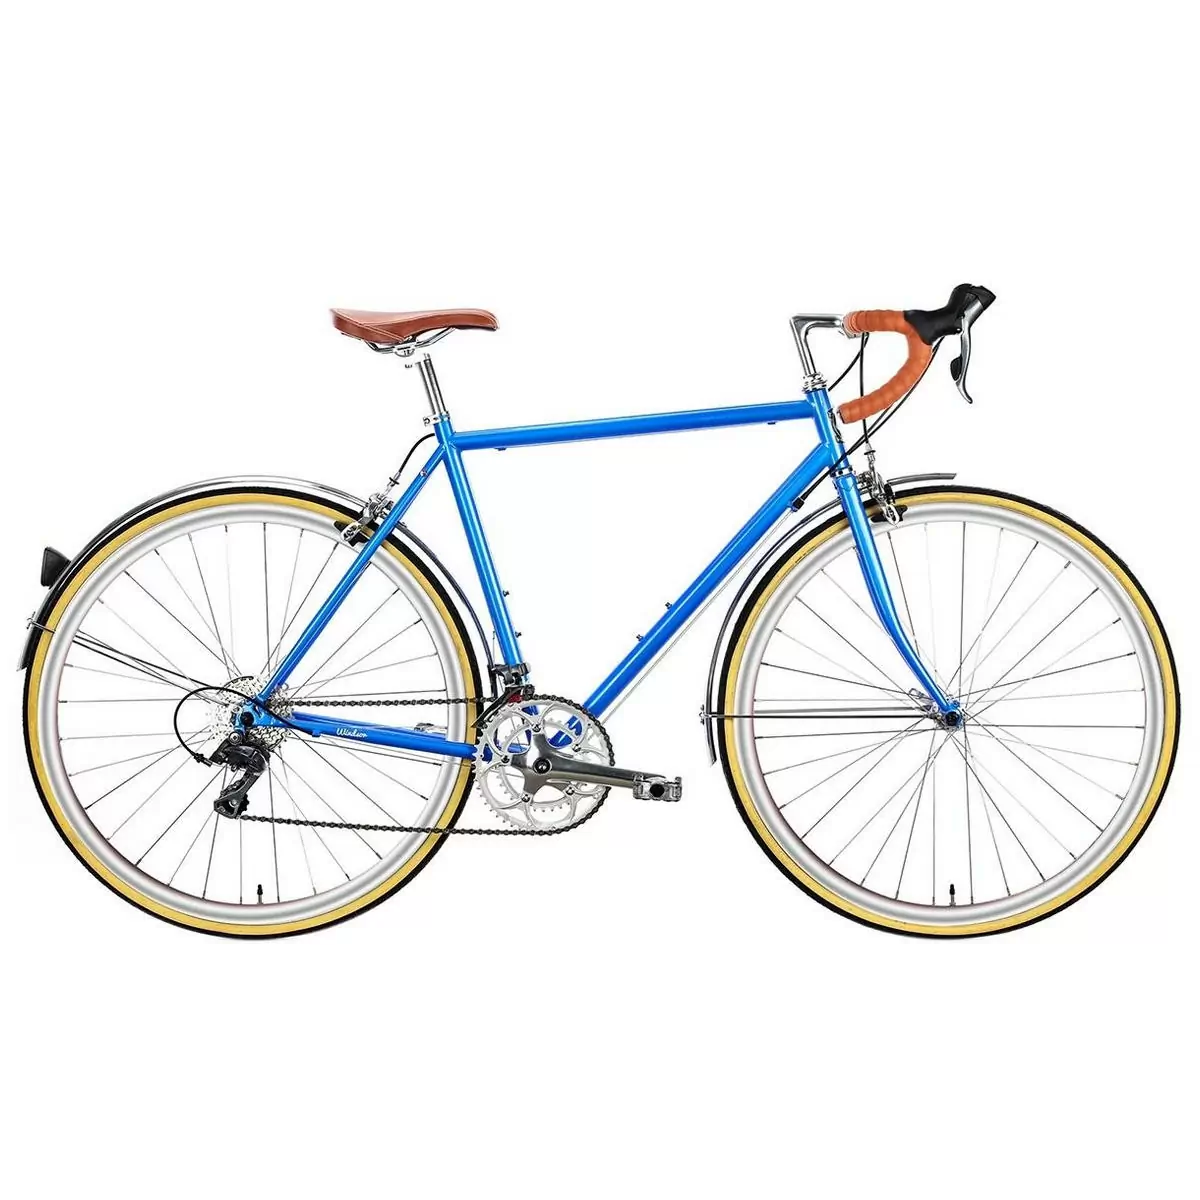 Bicicleta urbana TROY 16spd azul windsor pequena 58cm - image